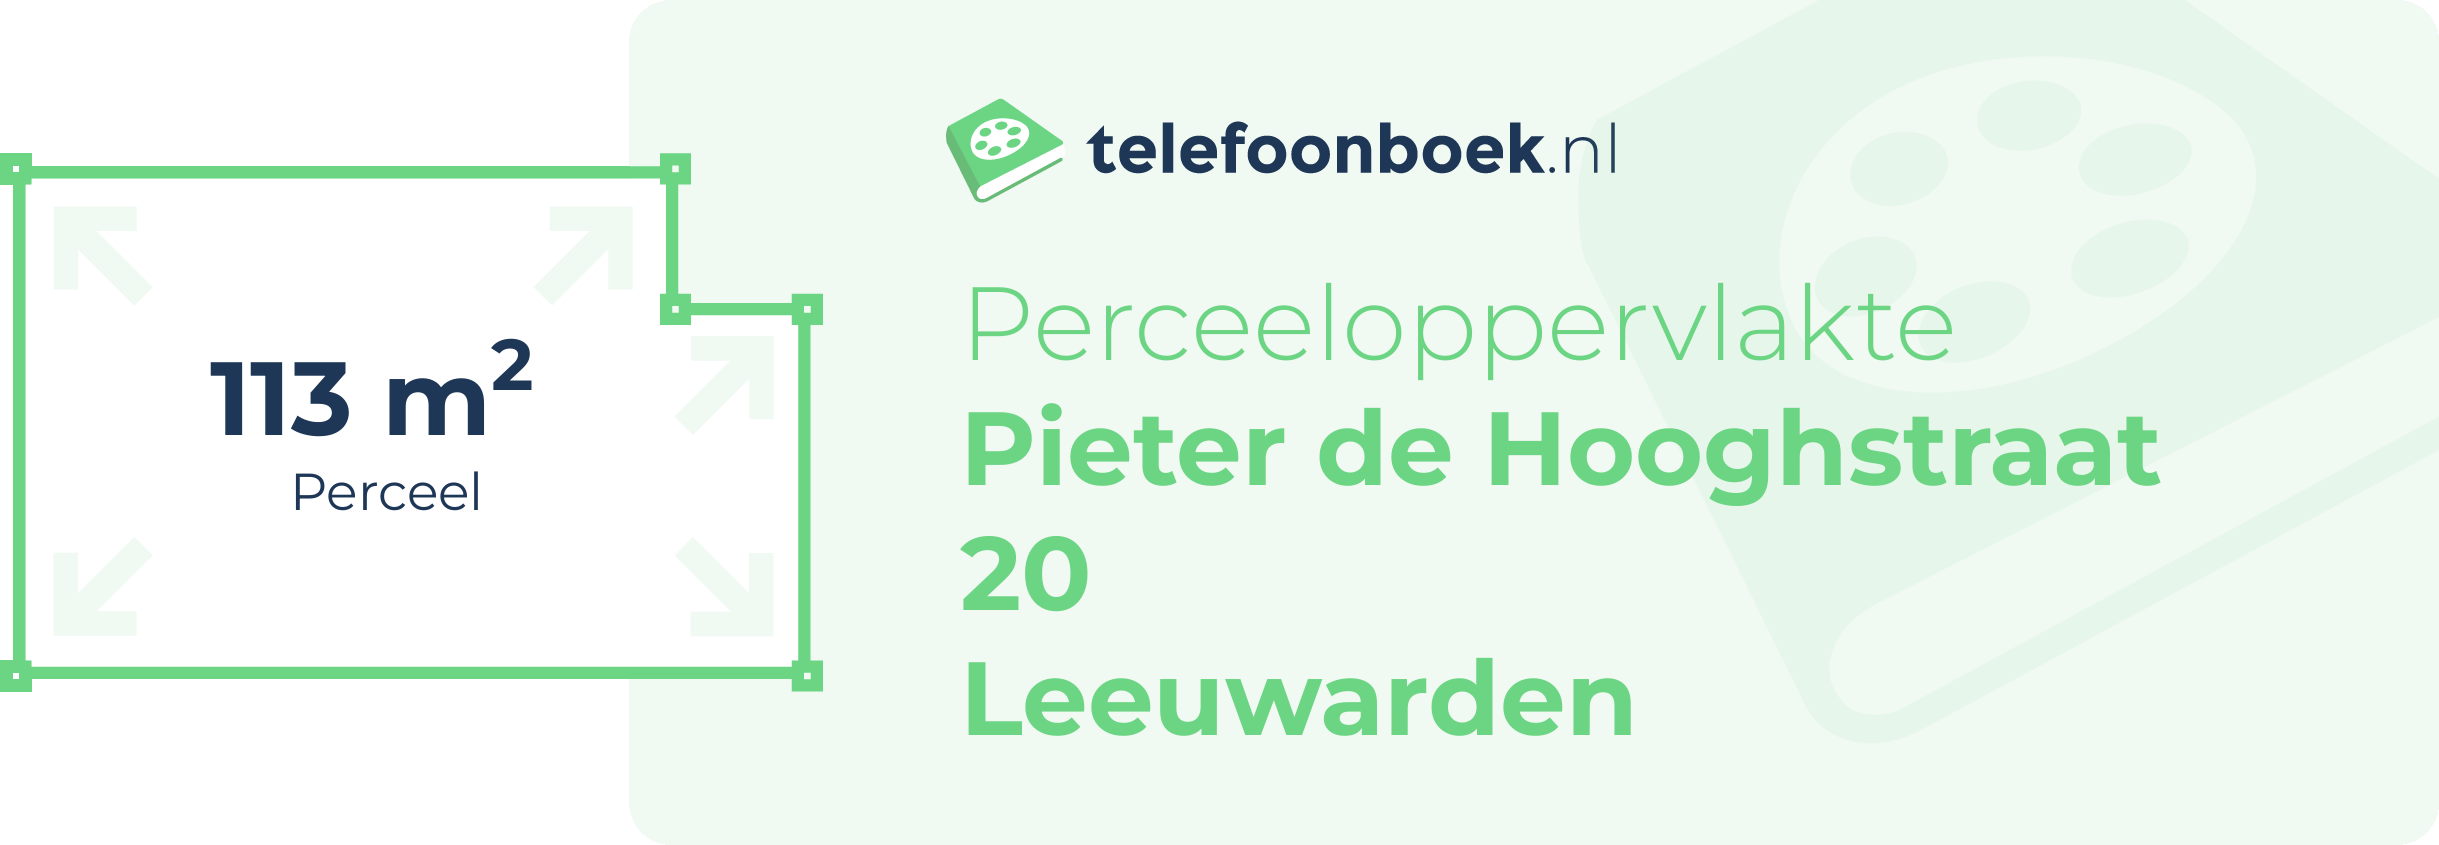 Perceeloppervlakte Pieter De Hooghstraat 20 Leeuwarden